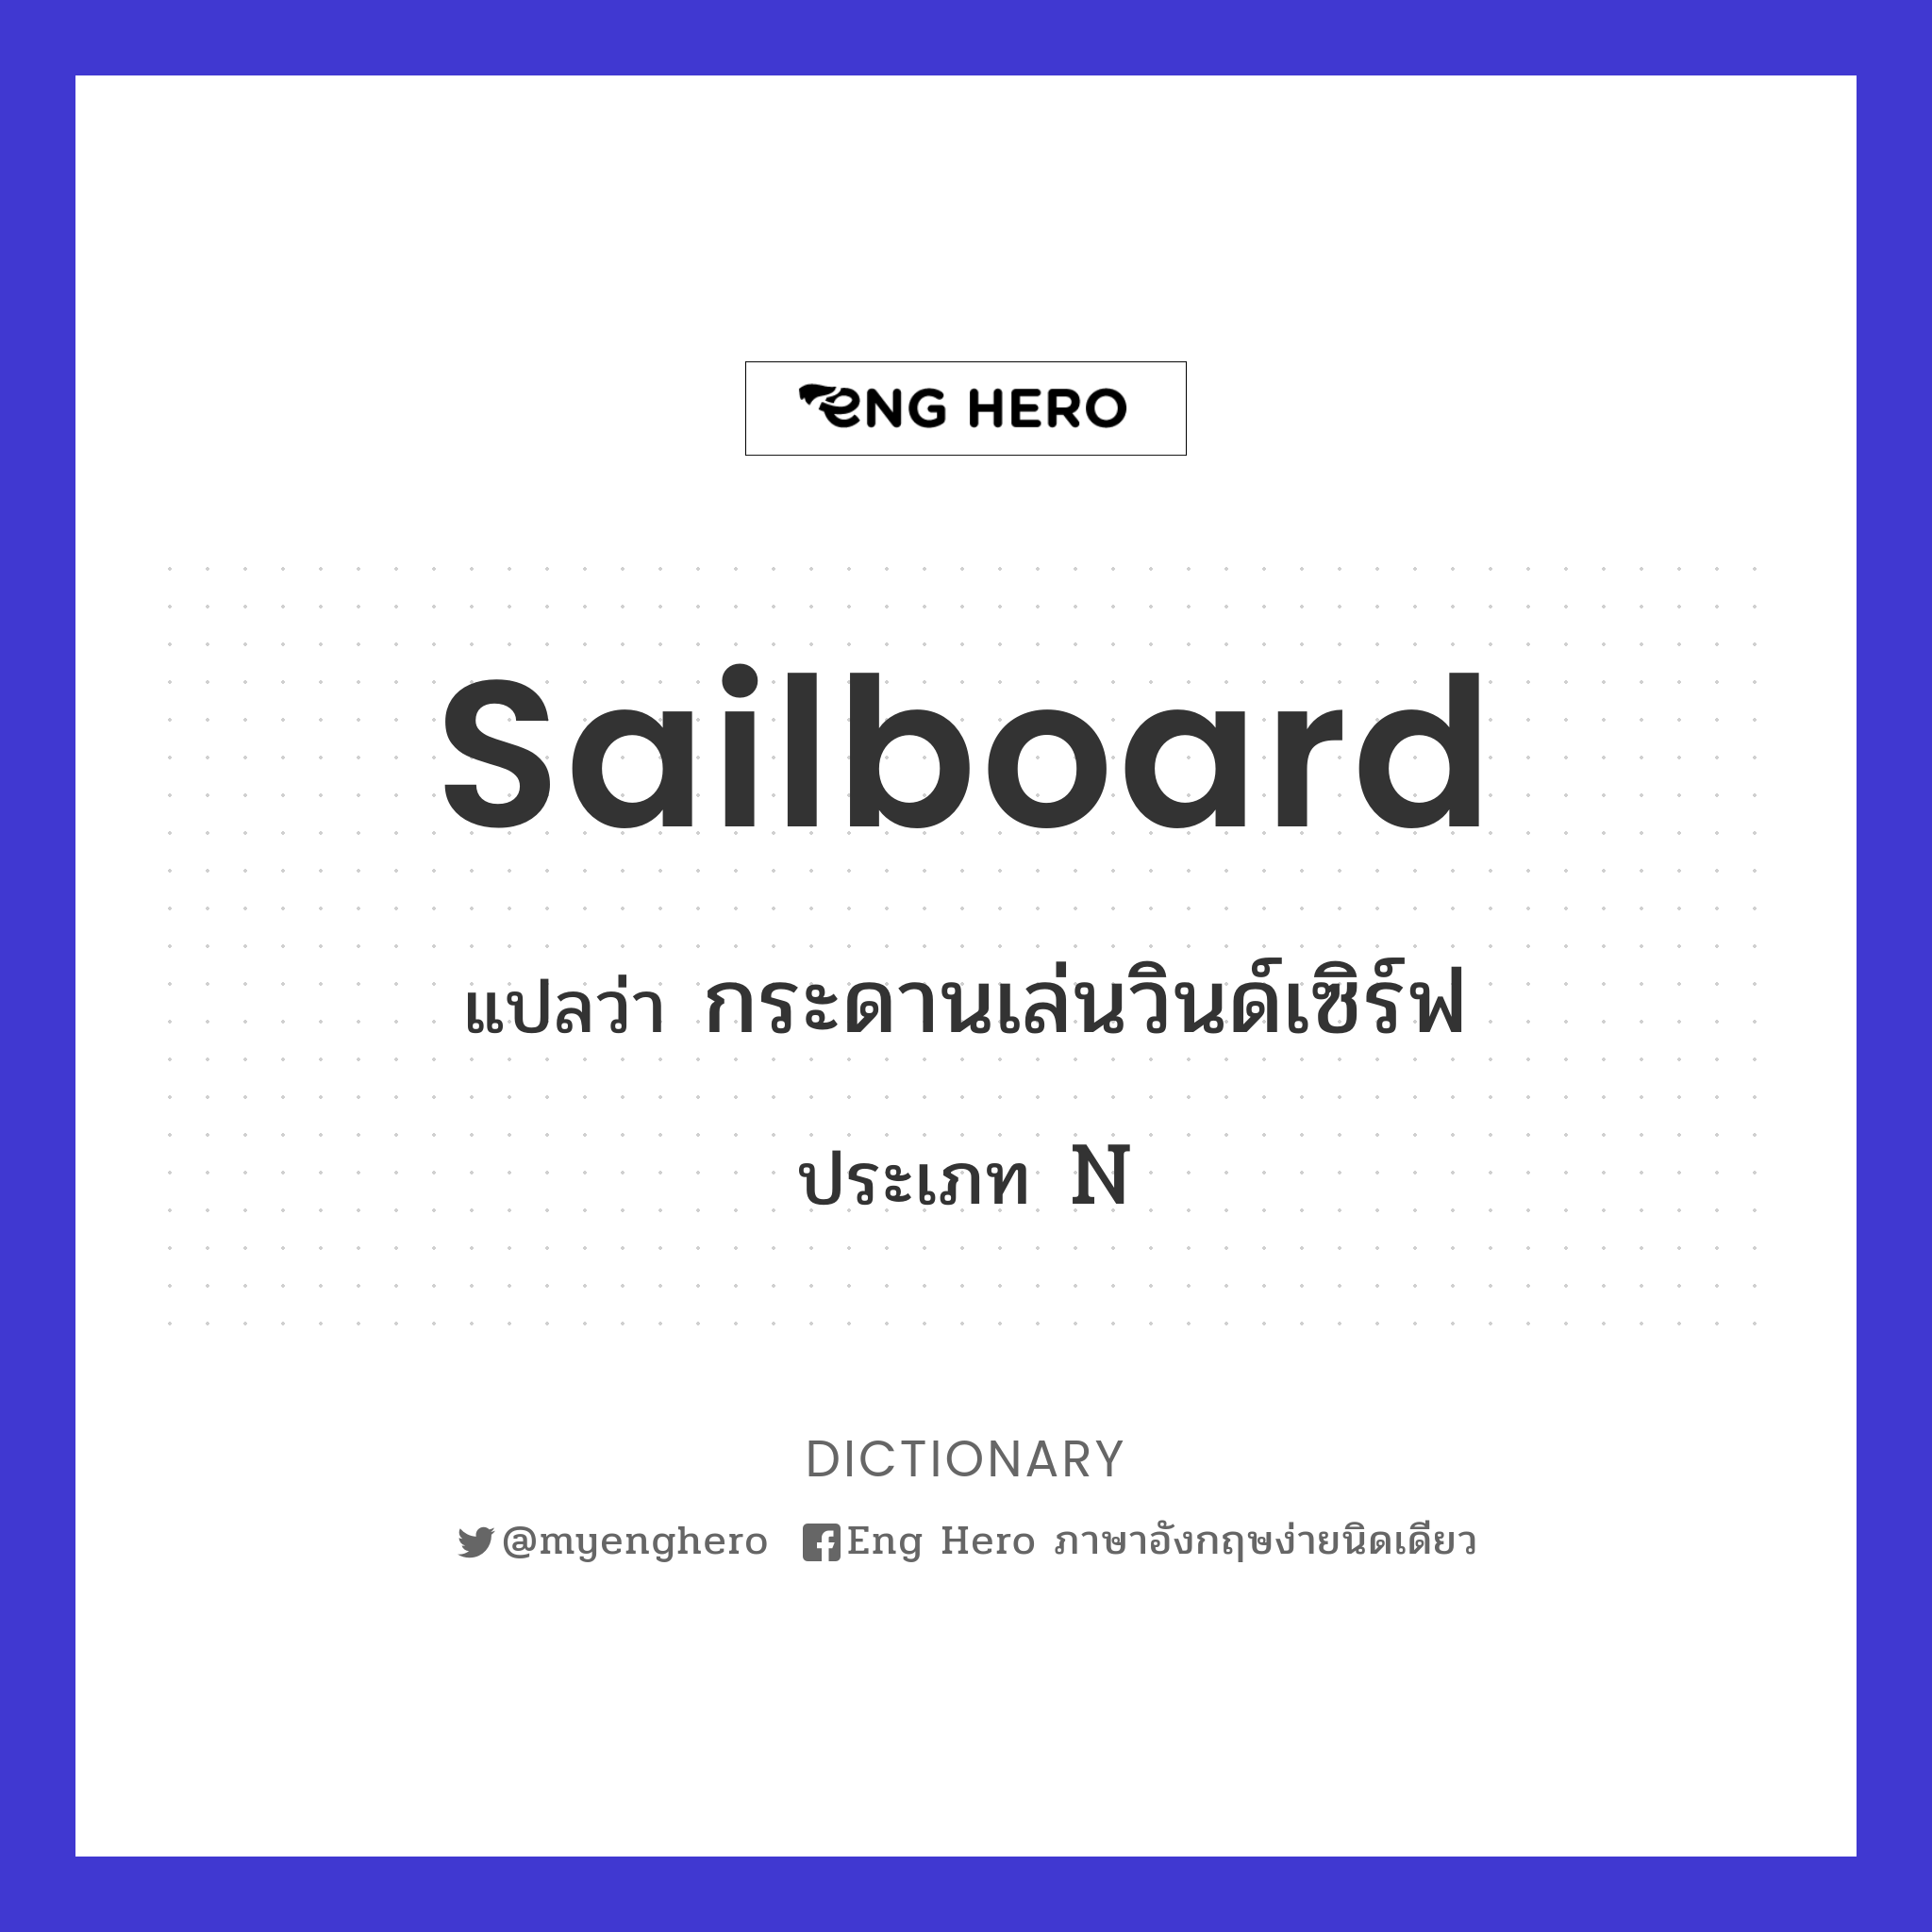 sailboard